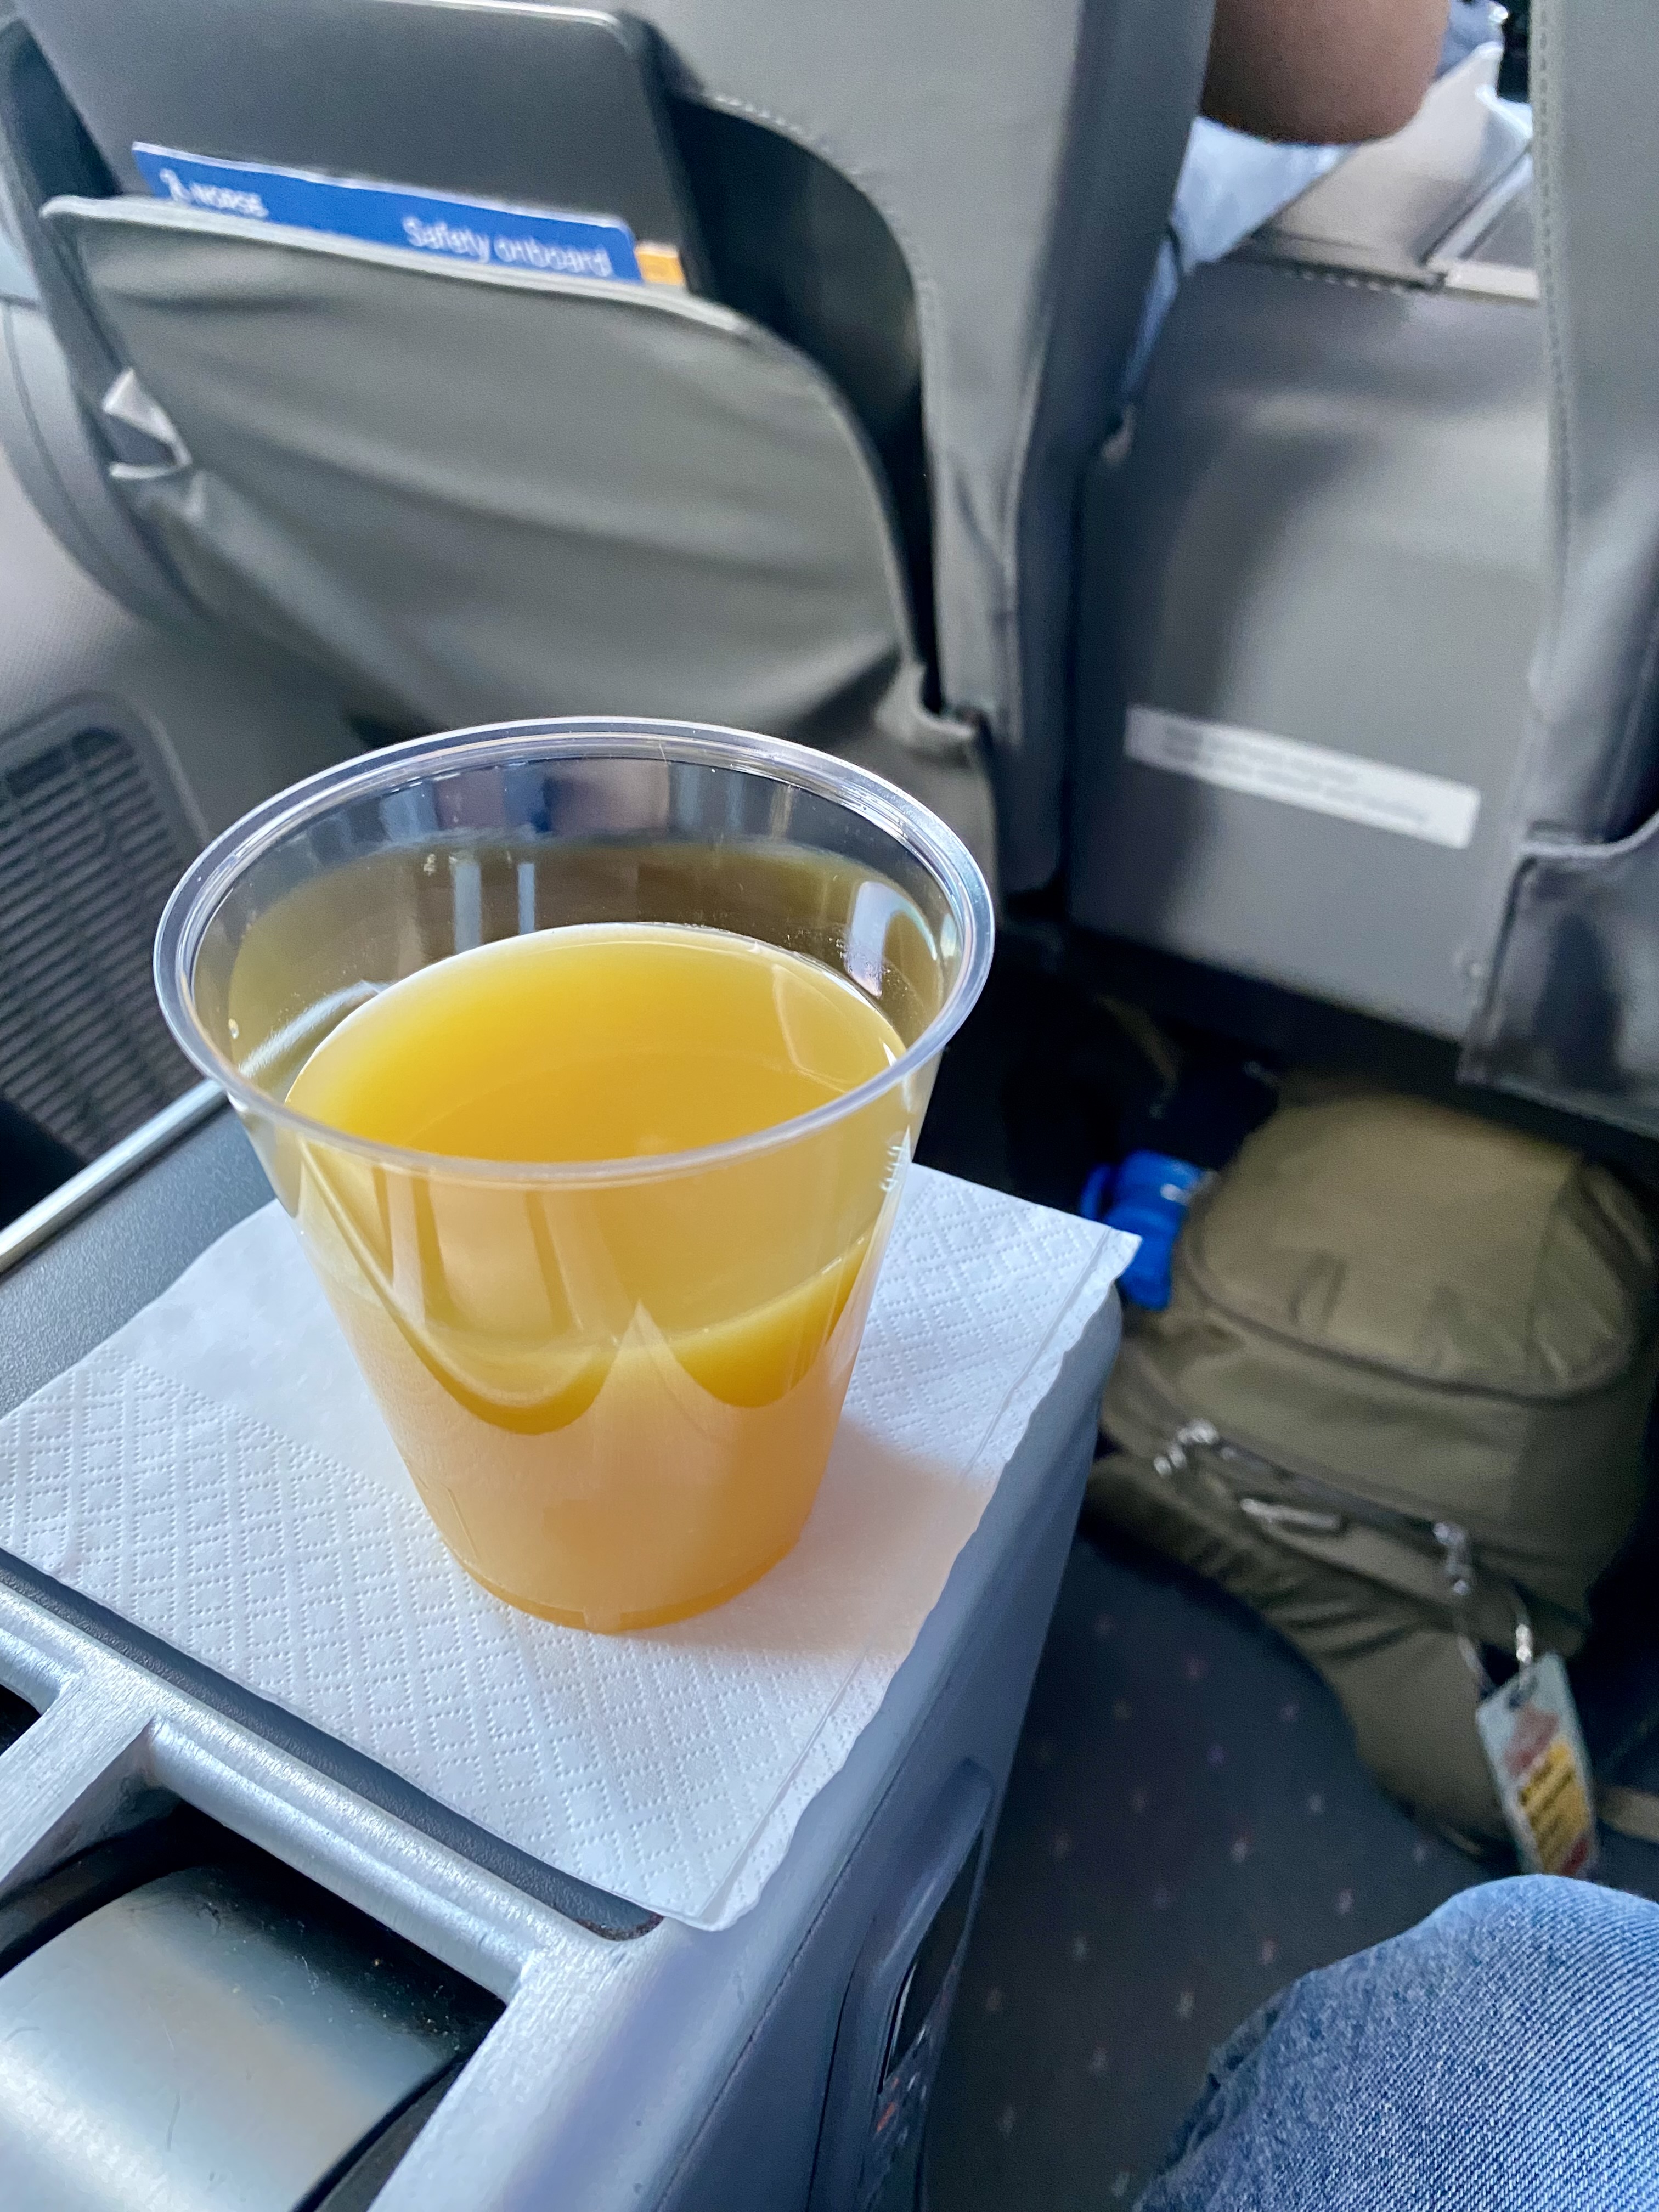 a cup of orange juice on a napkin